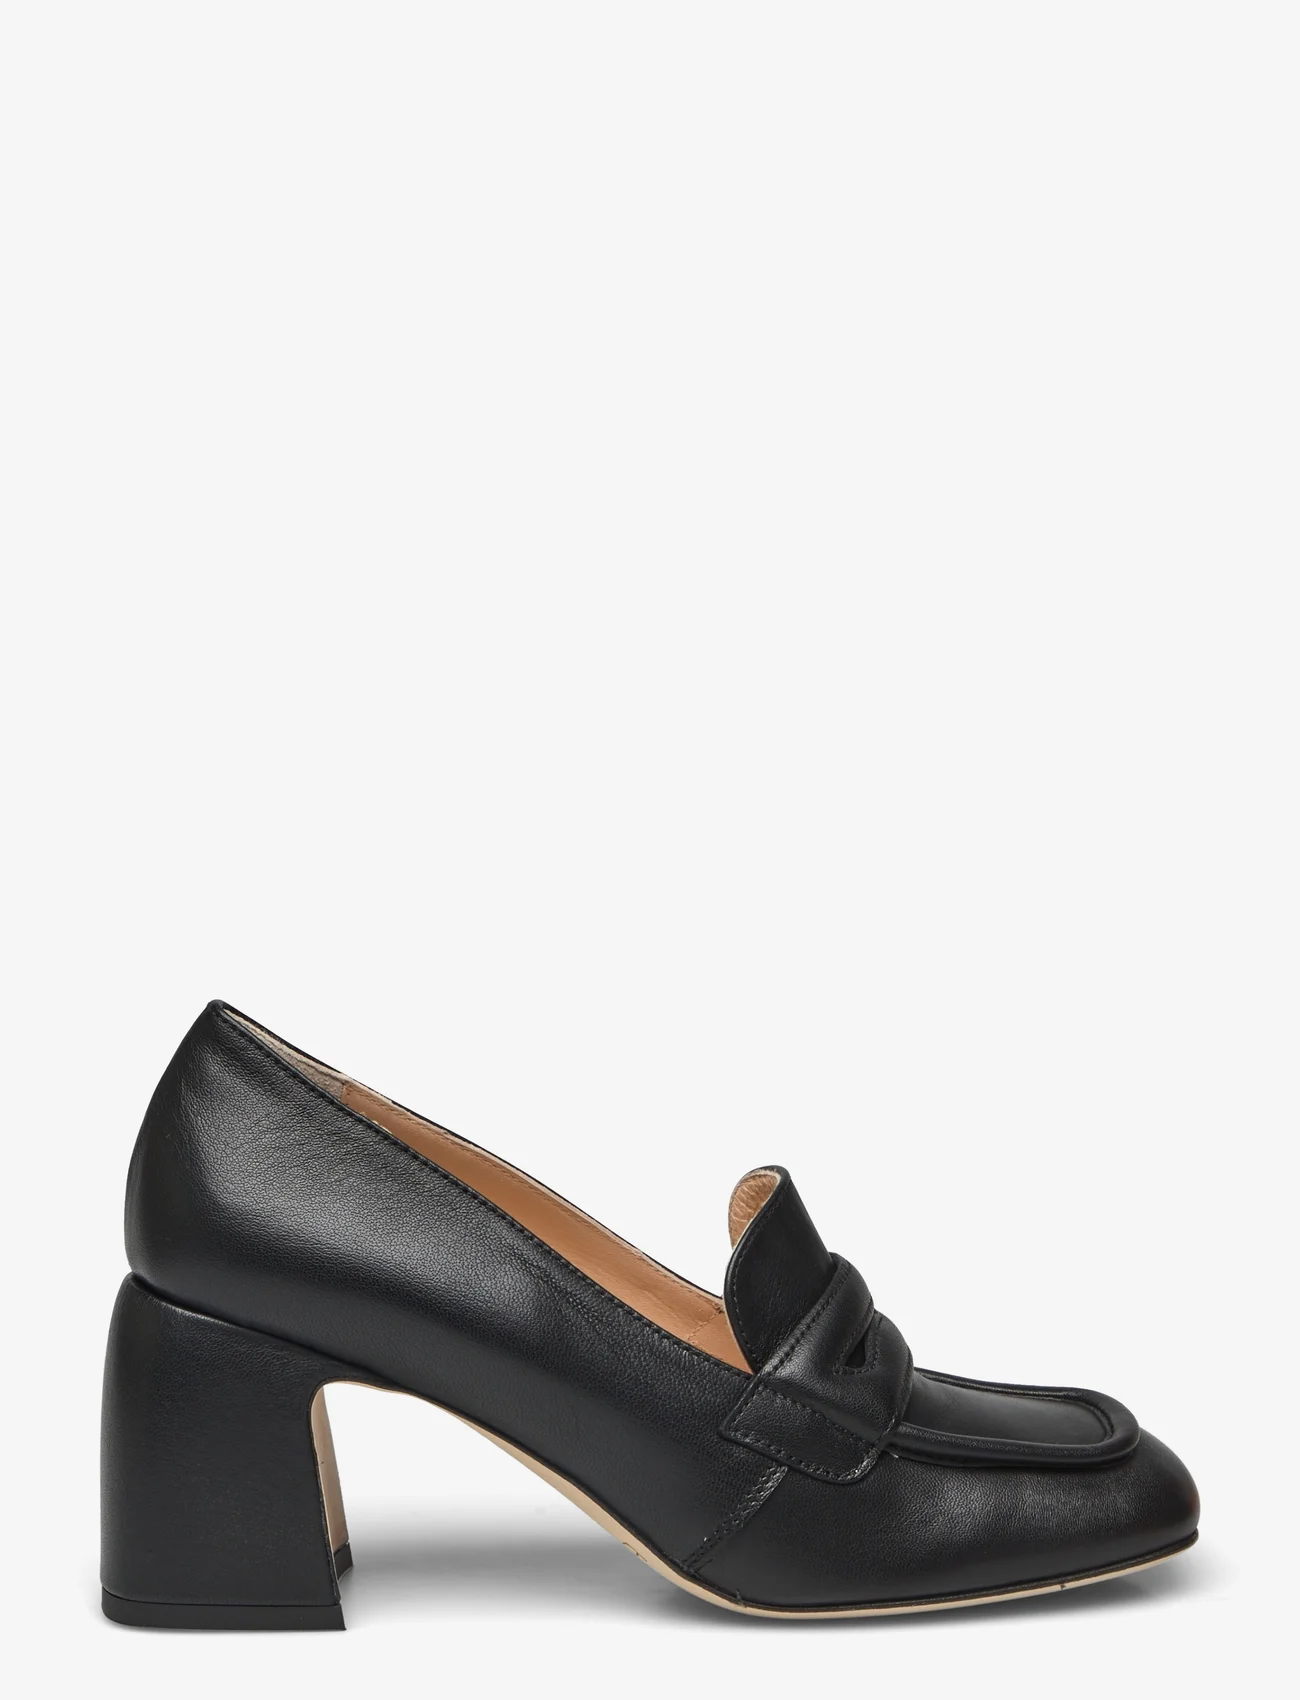 Laura Bellariva - shoes - loafers med klack - black - 1